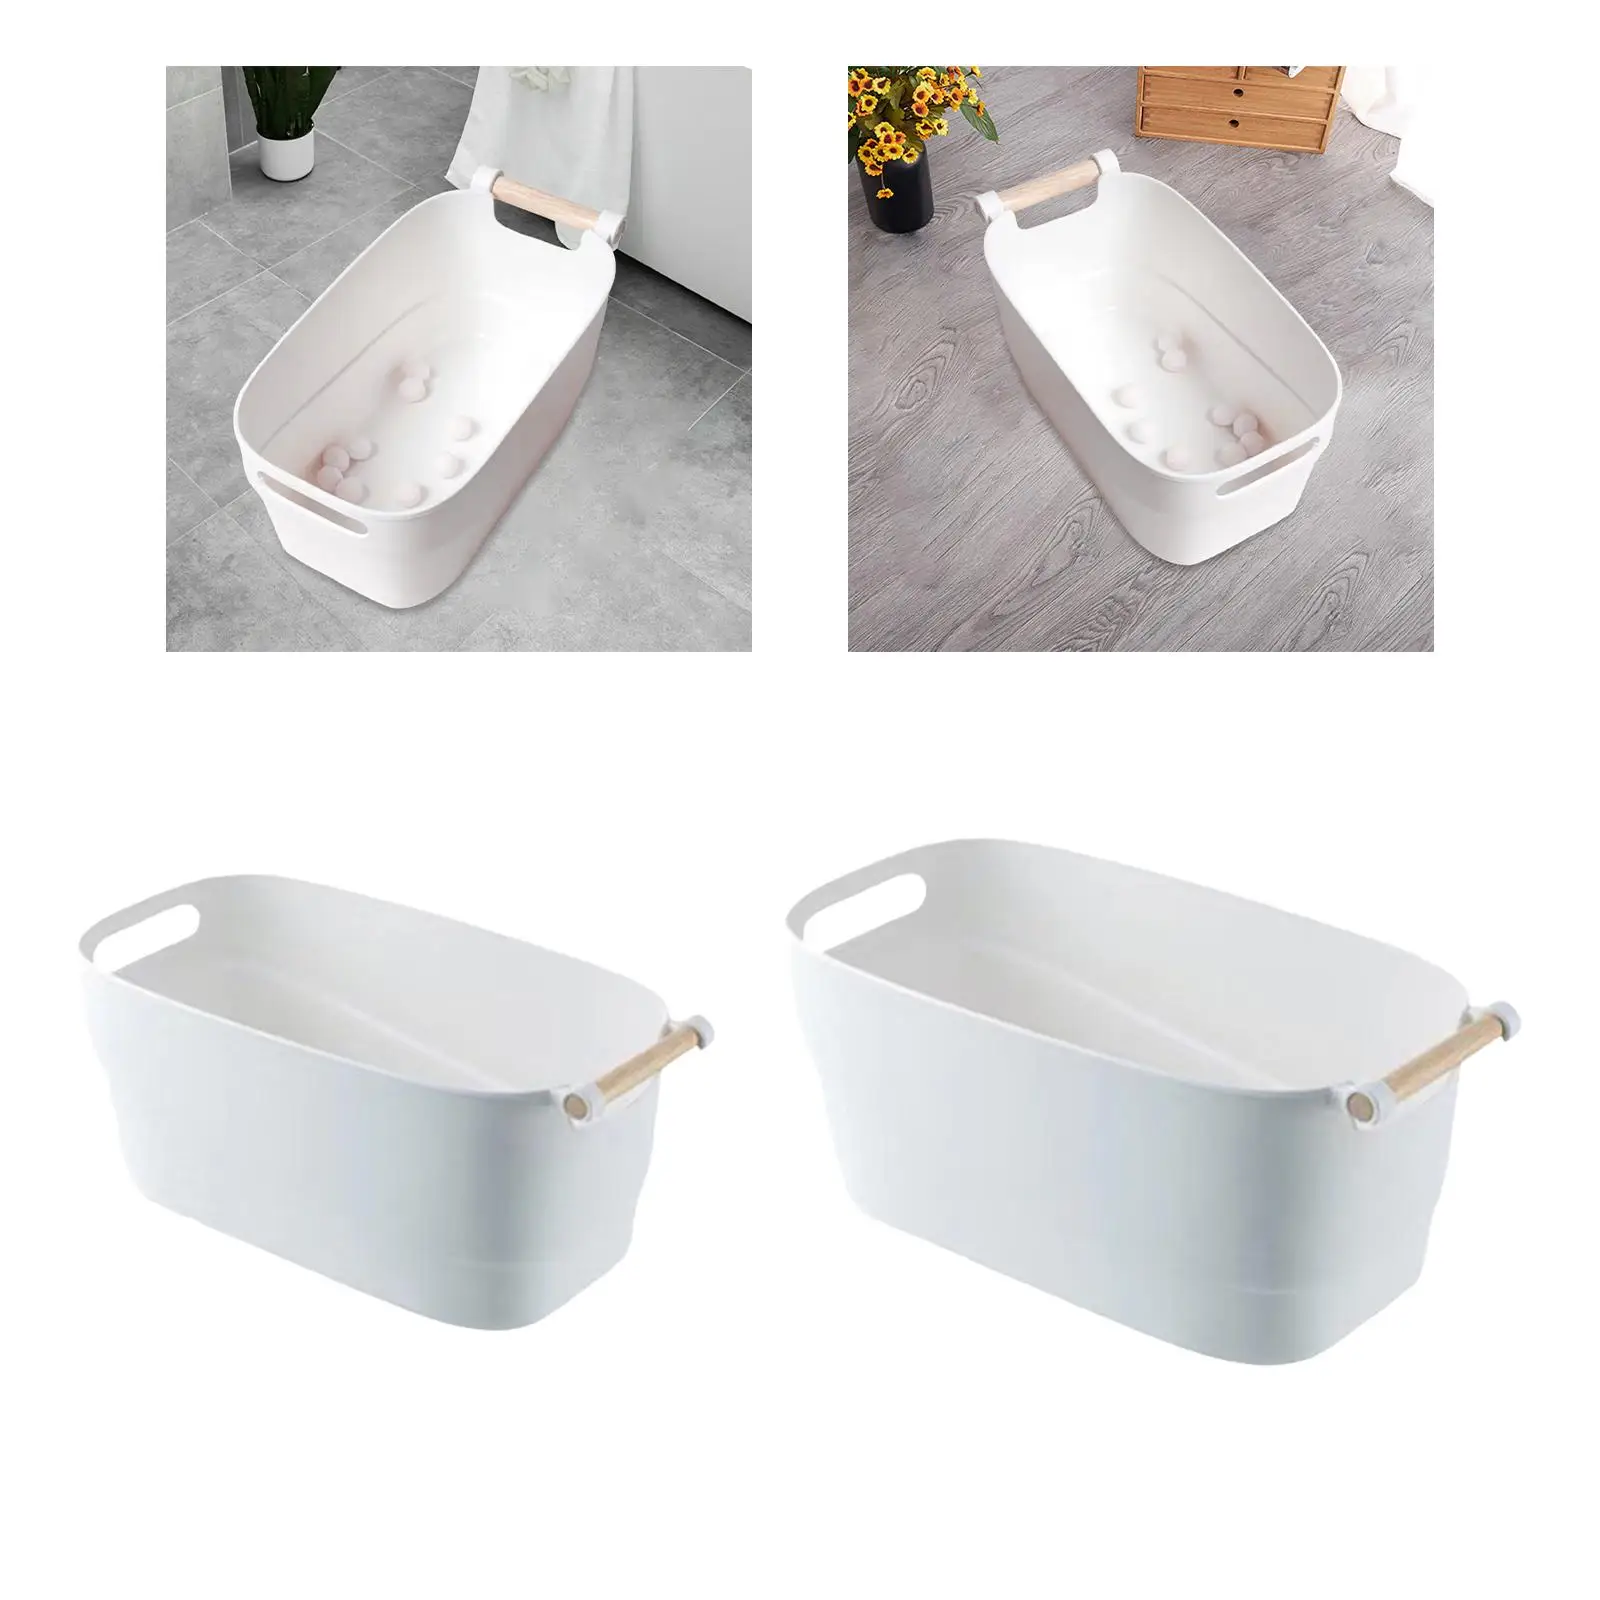 Nail Soaking Bowl Professional Storage Box with Handle Nail Art Remover Soak Bowl for Acrylic Nails Fingernail Toenail Home DIY